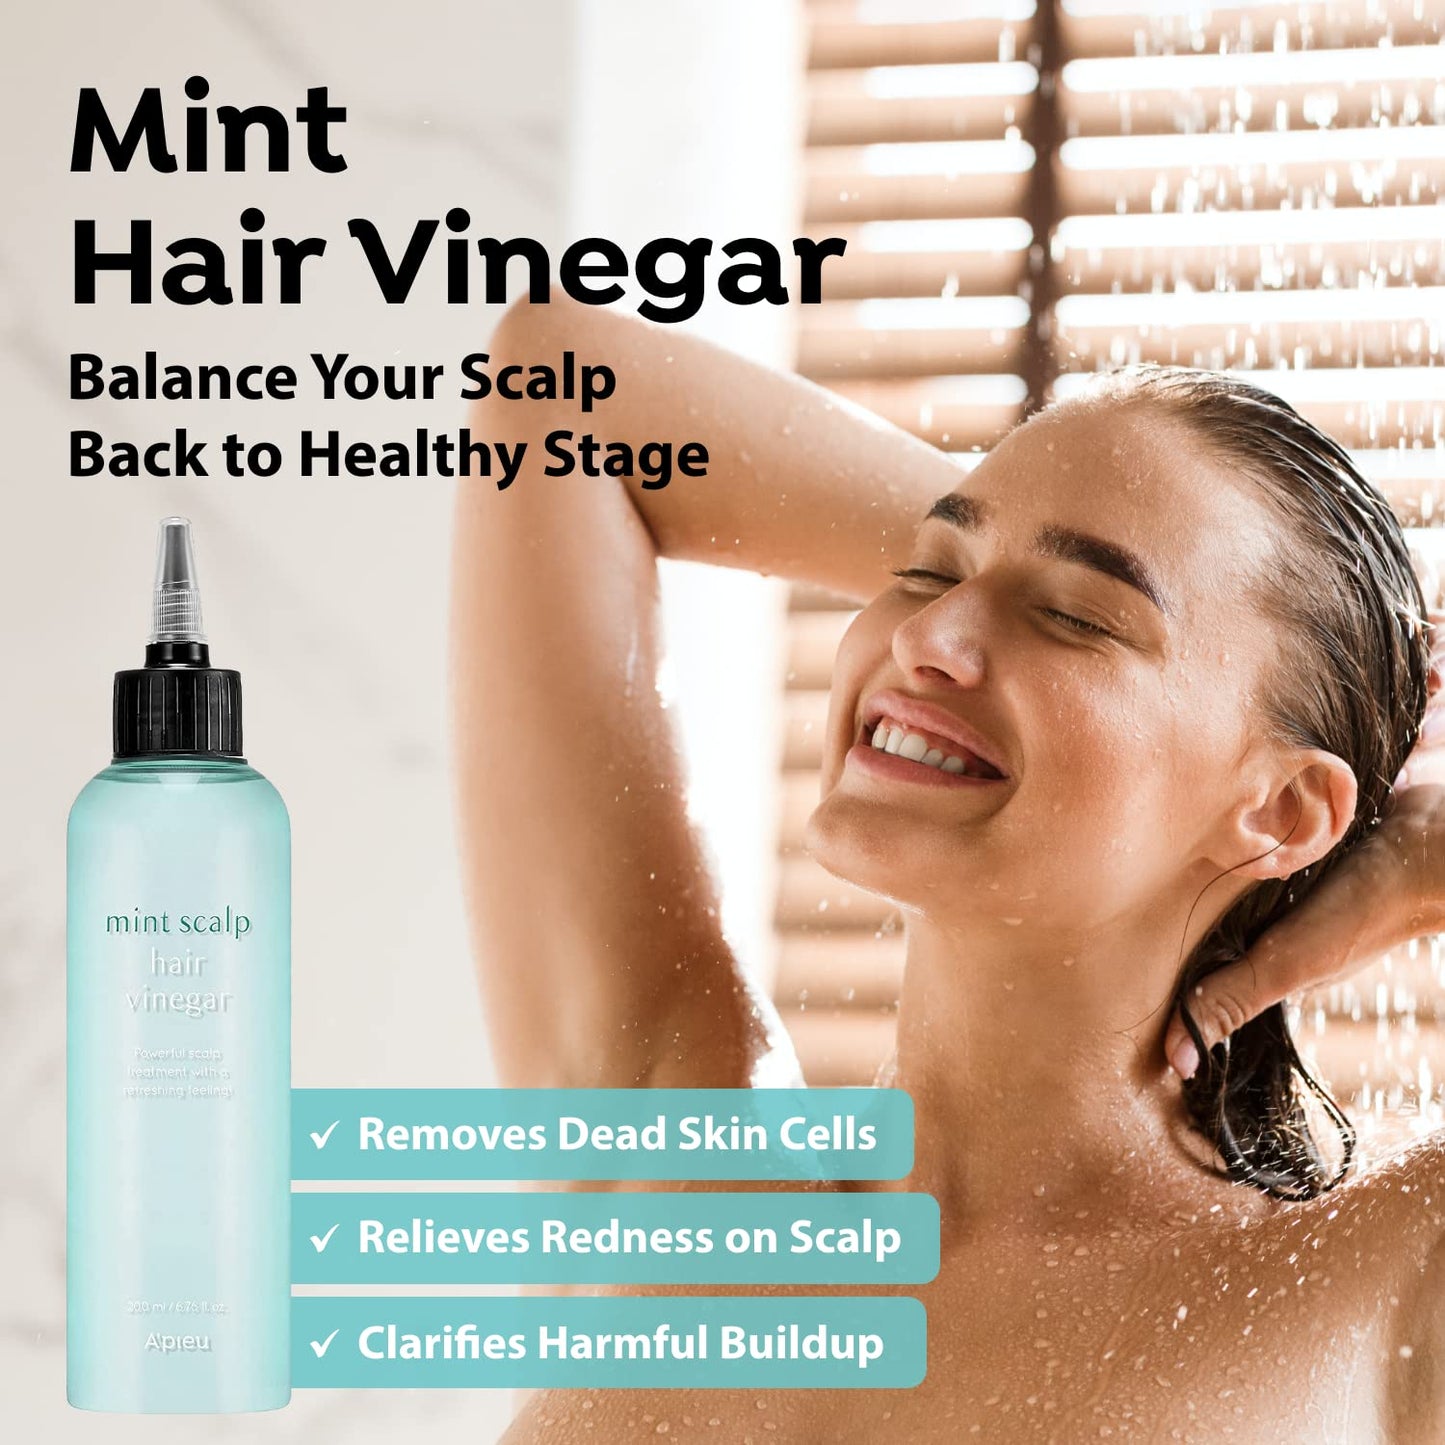 A'pieu Mint Scalp Hair Vinegar